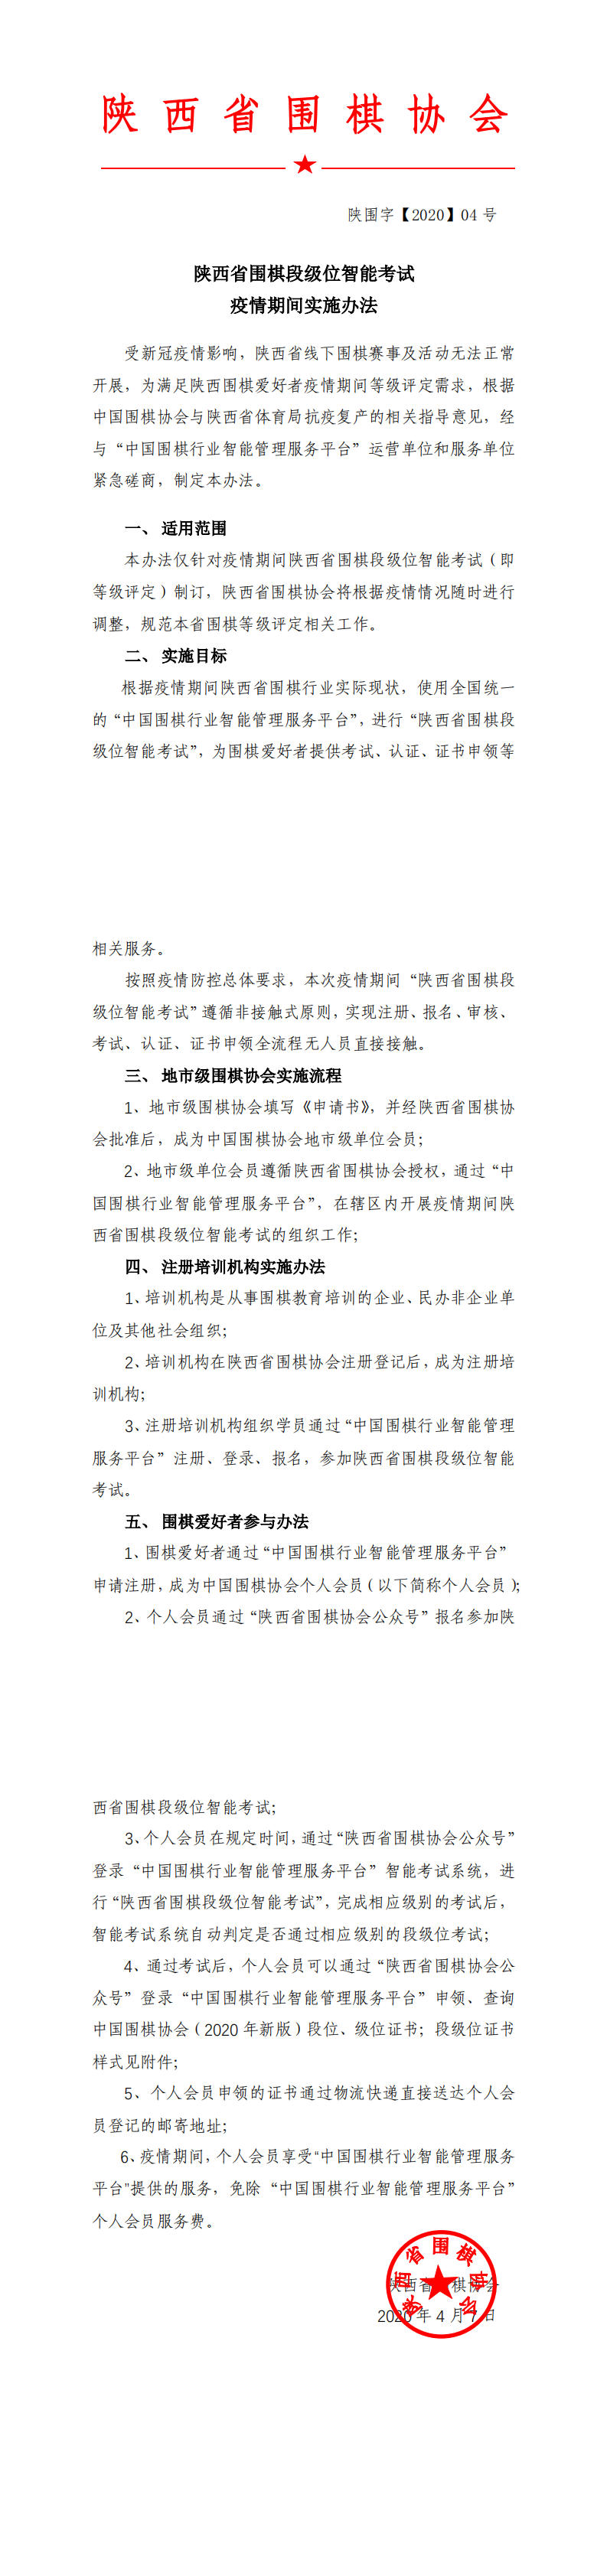 陕西省围棋协会疫情期间业余段级位评定实施办法（红头文件）(1)_0.png